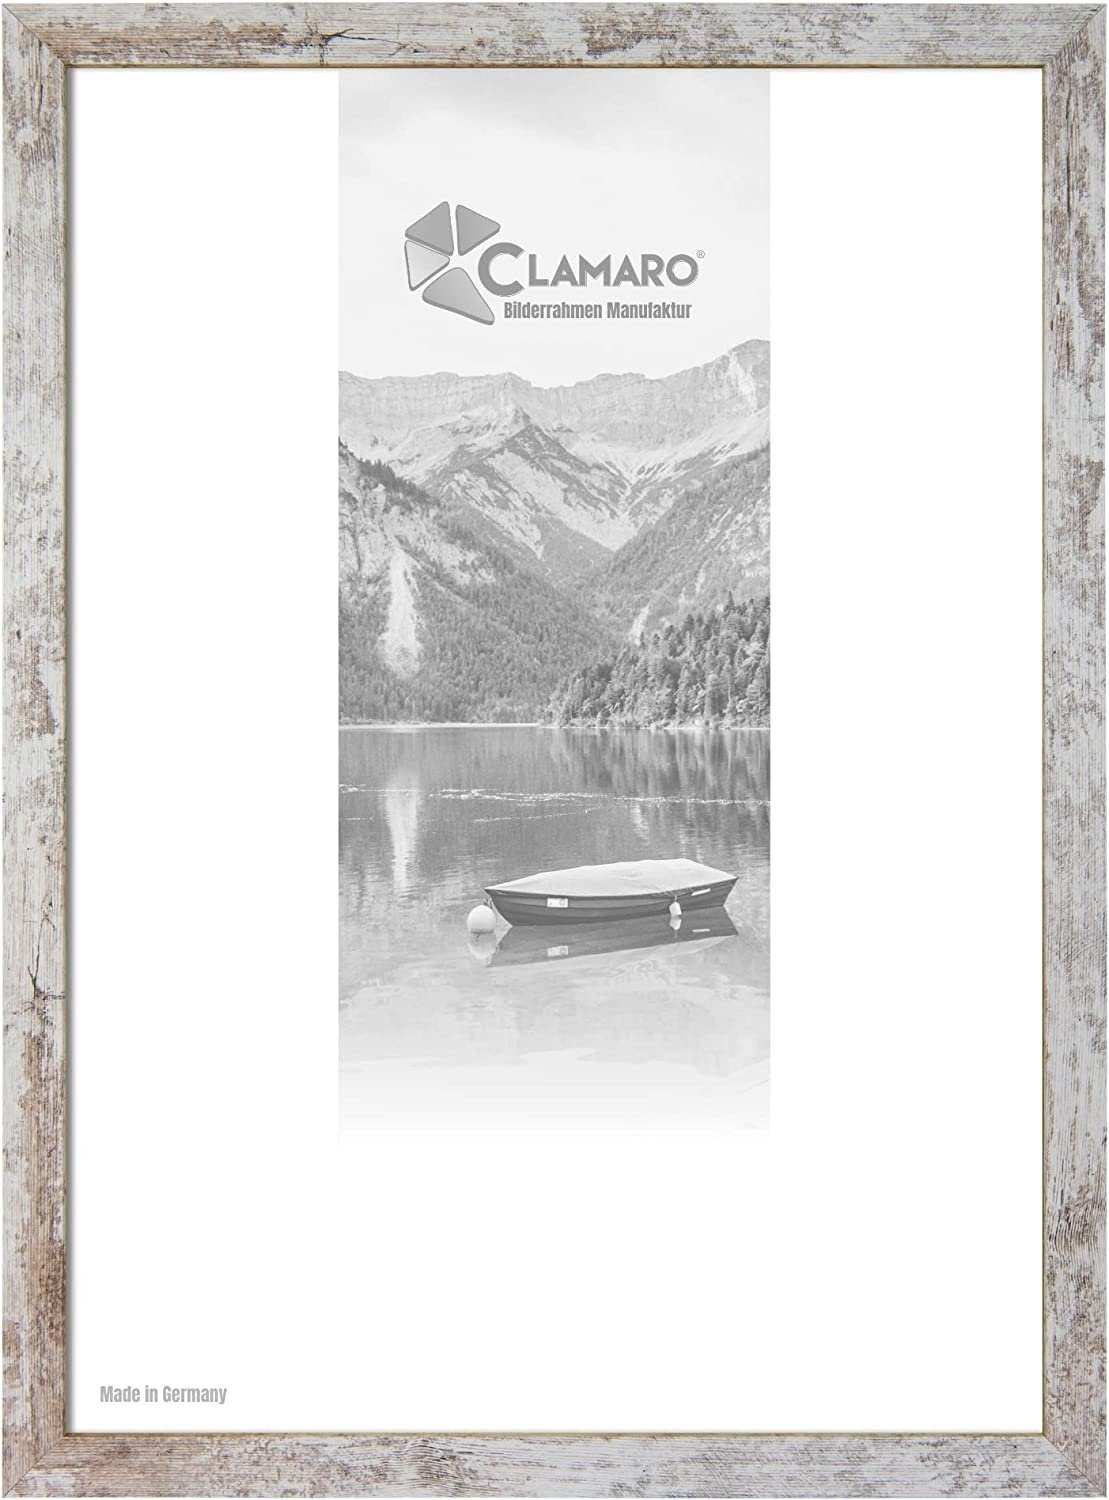 Clamaro Bilderrahmen Bilderrahmen Vintage Weiss CLAMARO Collage nach Maß FSC® Holz Modern eckig M3016 22x30 in Vintage Weiss